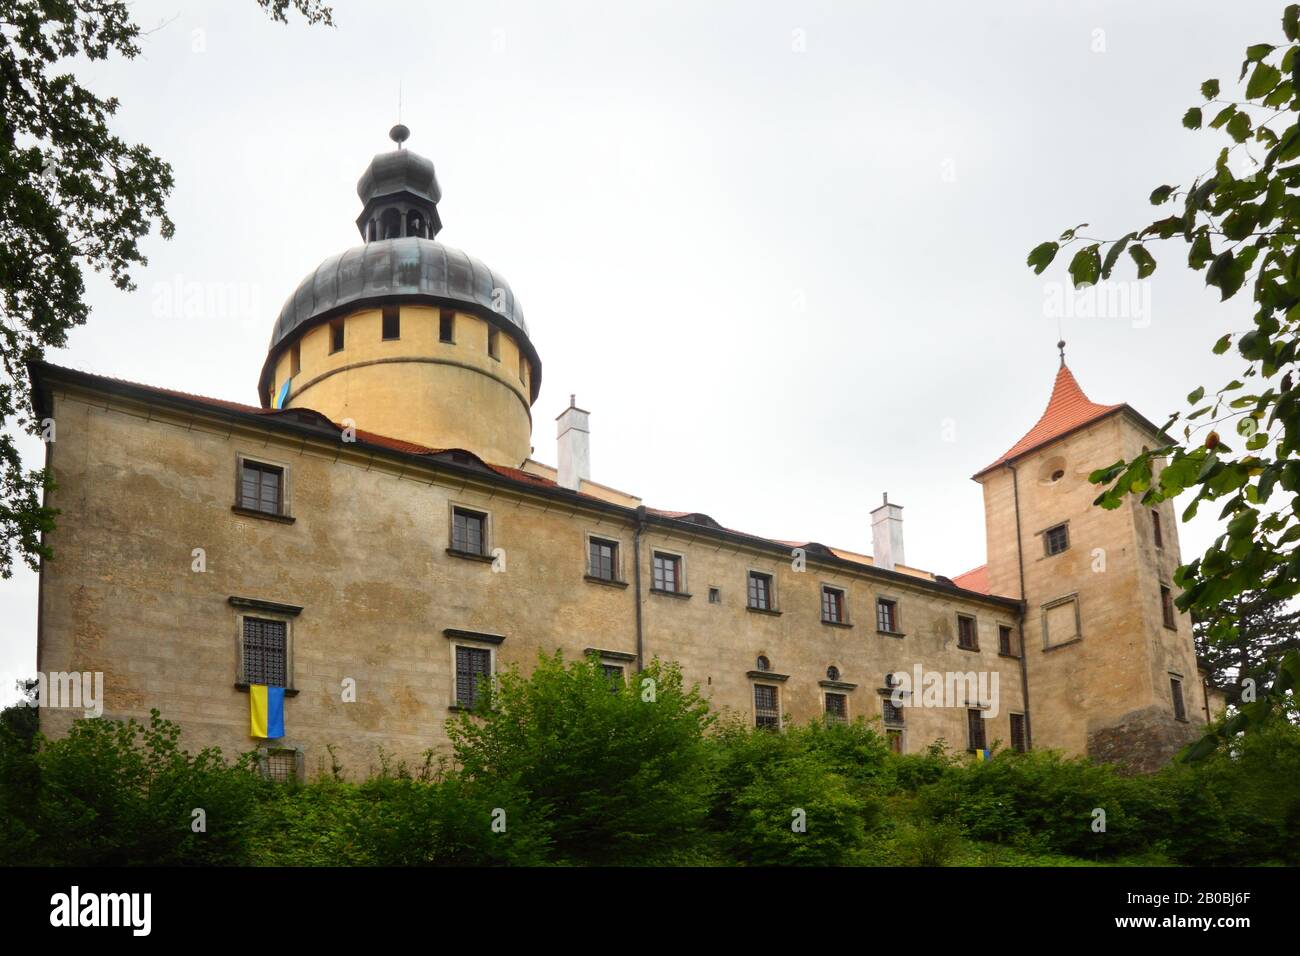 Grabstejn Chateau in Czech Republic Stock Photo